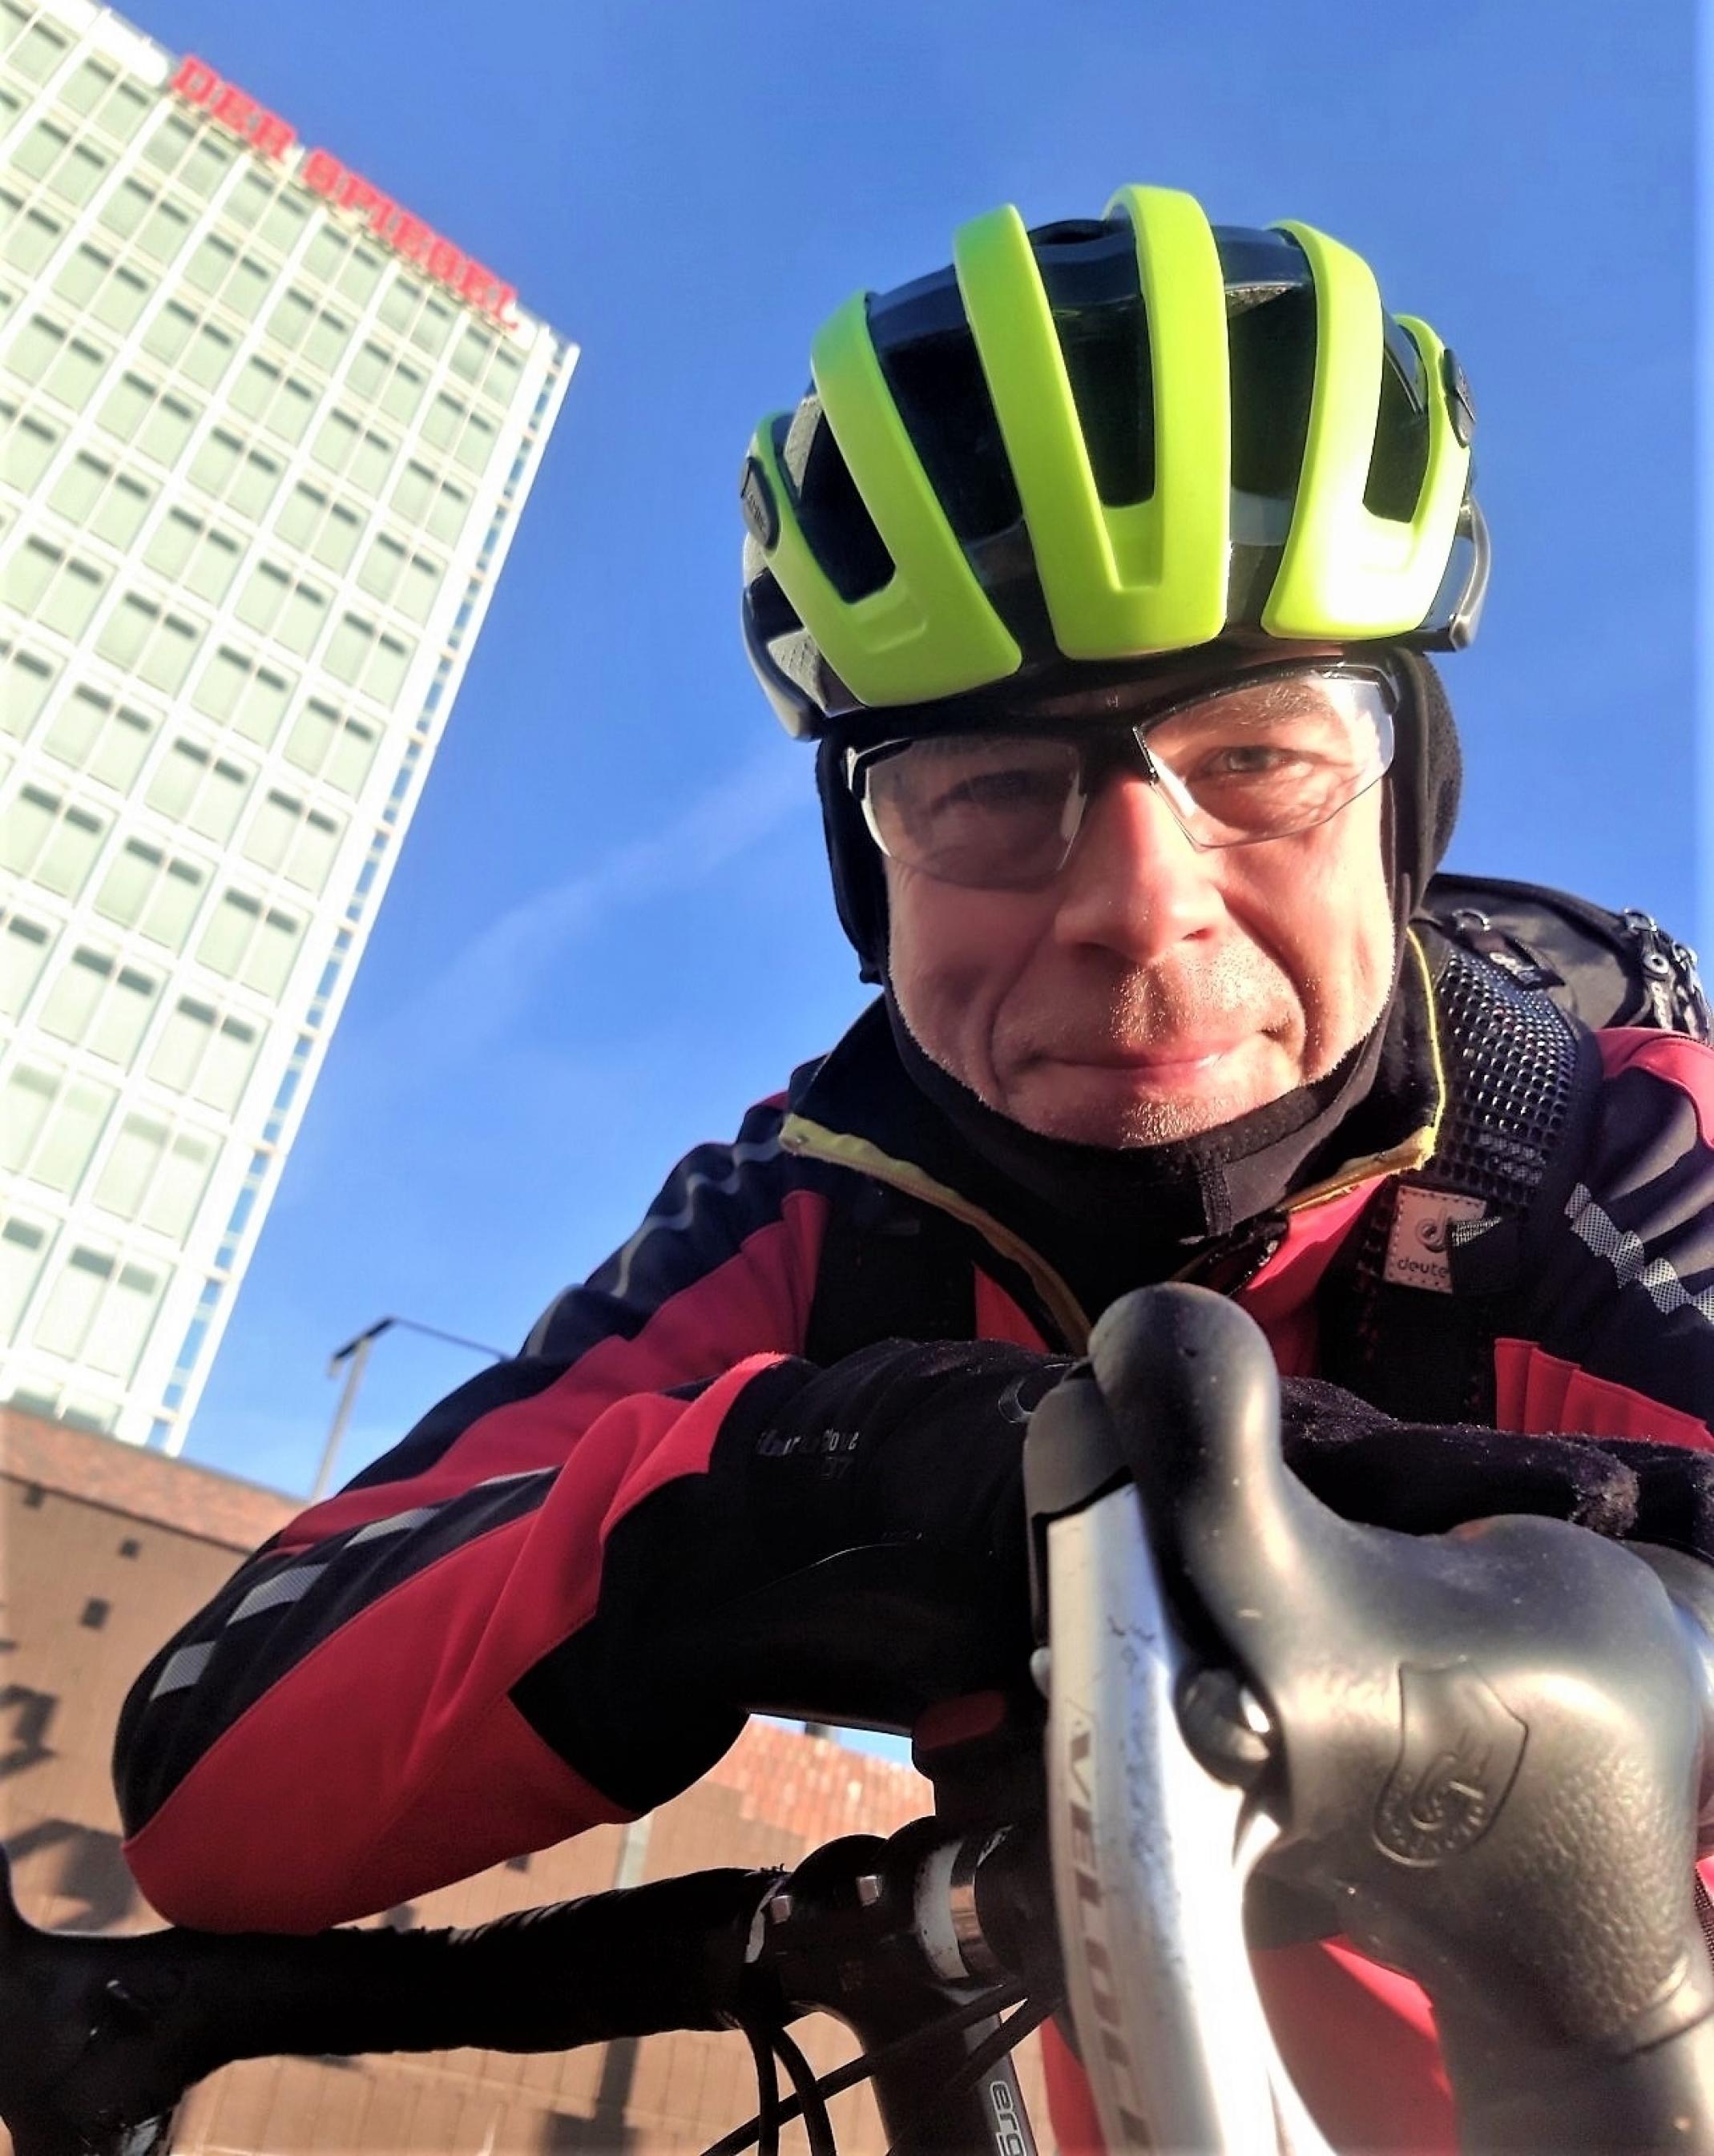 Der behelmte und dick eingemummelte Reporter lugt über den Lenker seines Rennrads; im Hintergrund ragt das vom roten Schriftzug „Der Spiegel“ gekrönte Hochhaus in einen stahlblauen Himmel